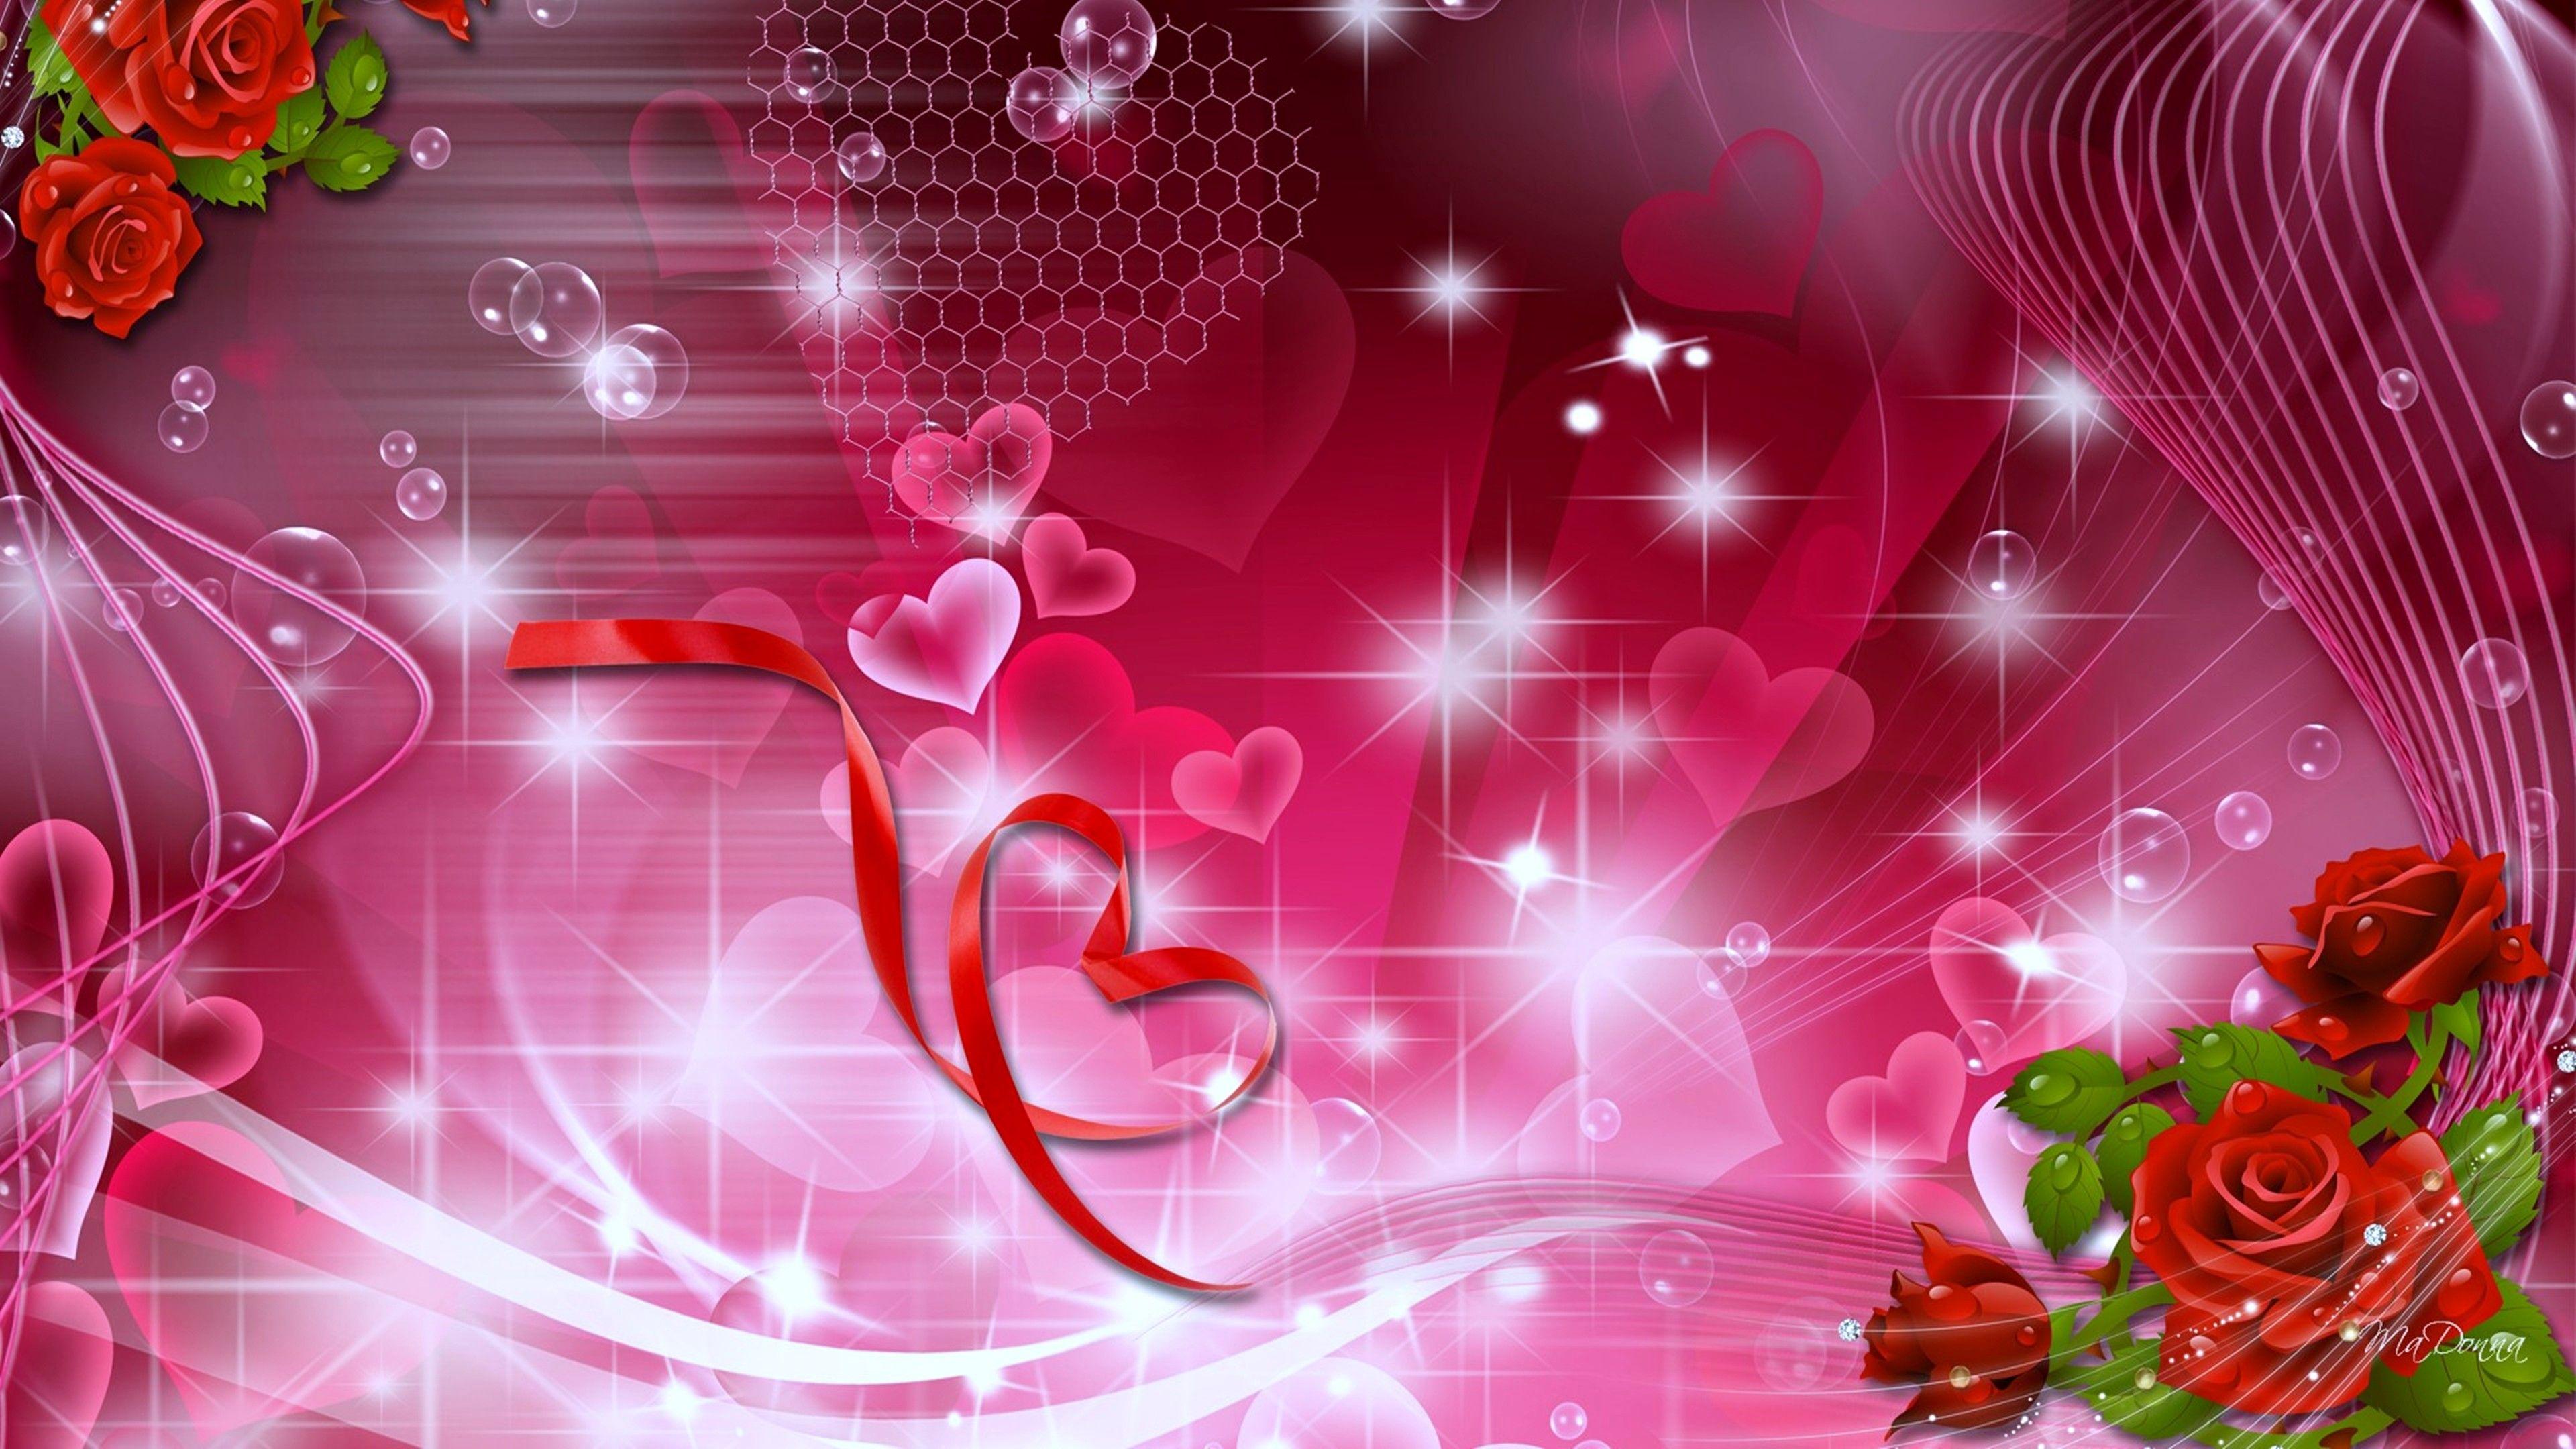 Beautiful Love Wallpapers For Desktop Full Screen ...